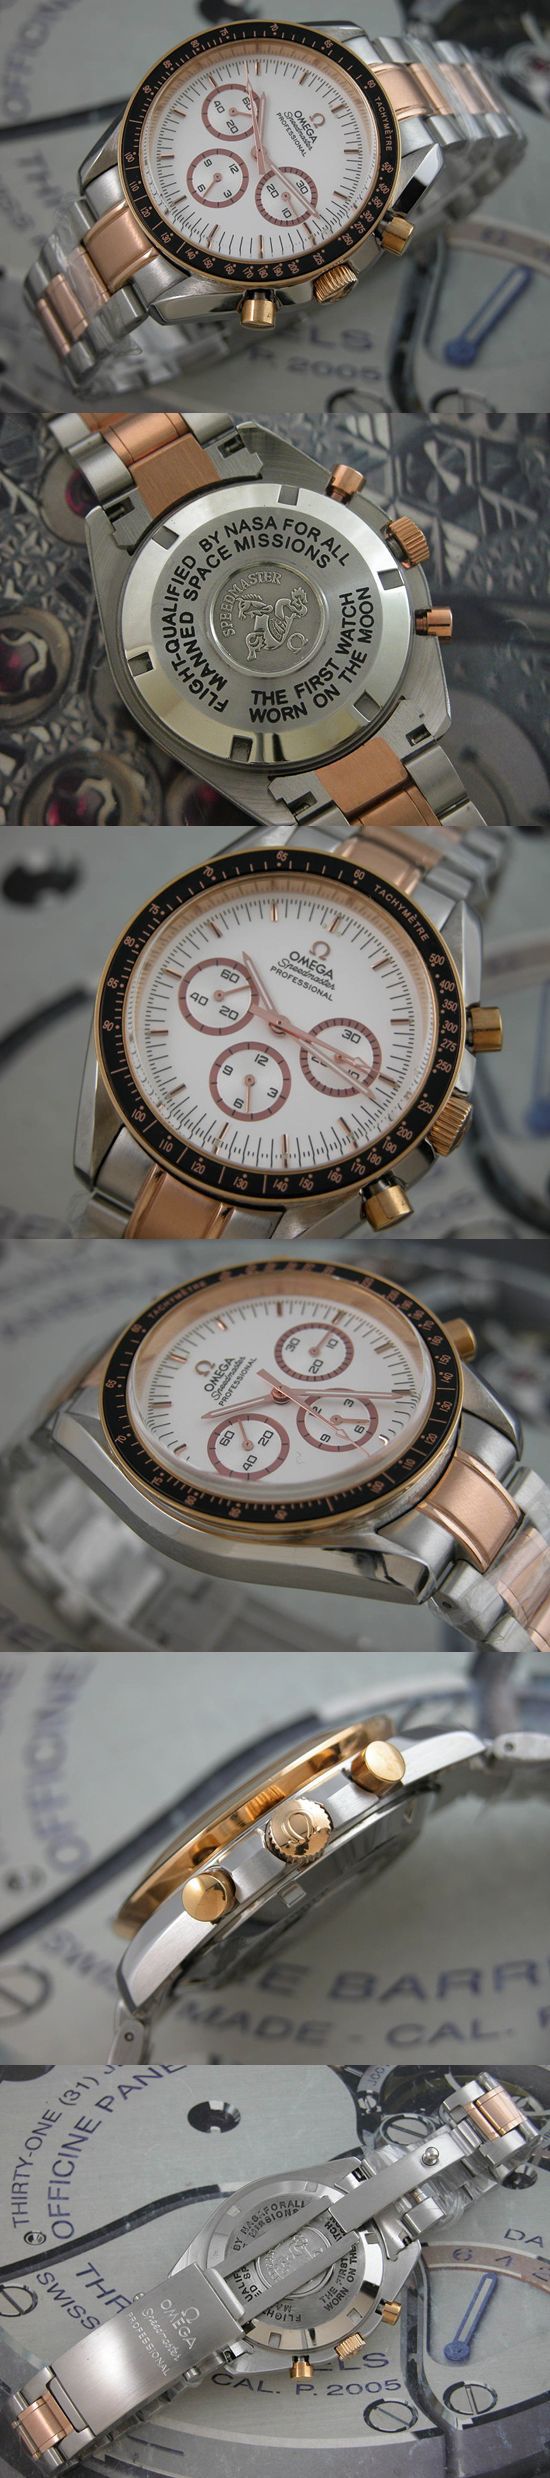 おしゃれなブランド時計がパテック フィリップ-アクアノート-PATEK-PHILIPPE-PP00023S-男性用を提供します.